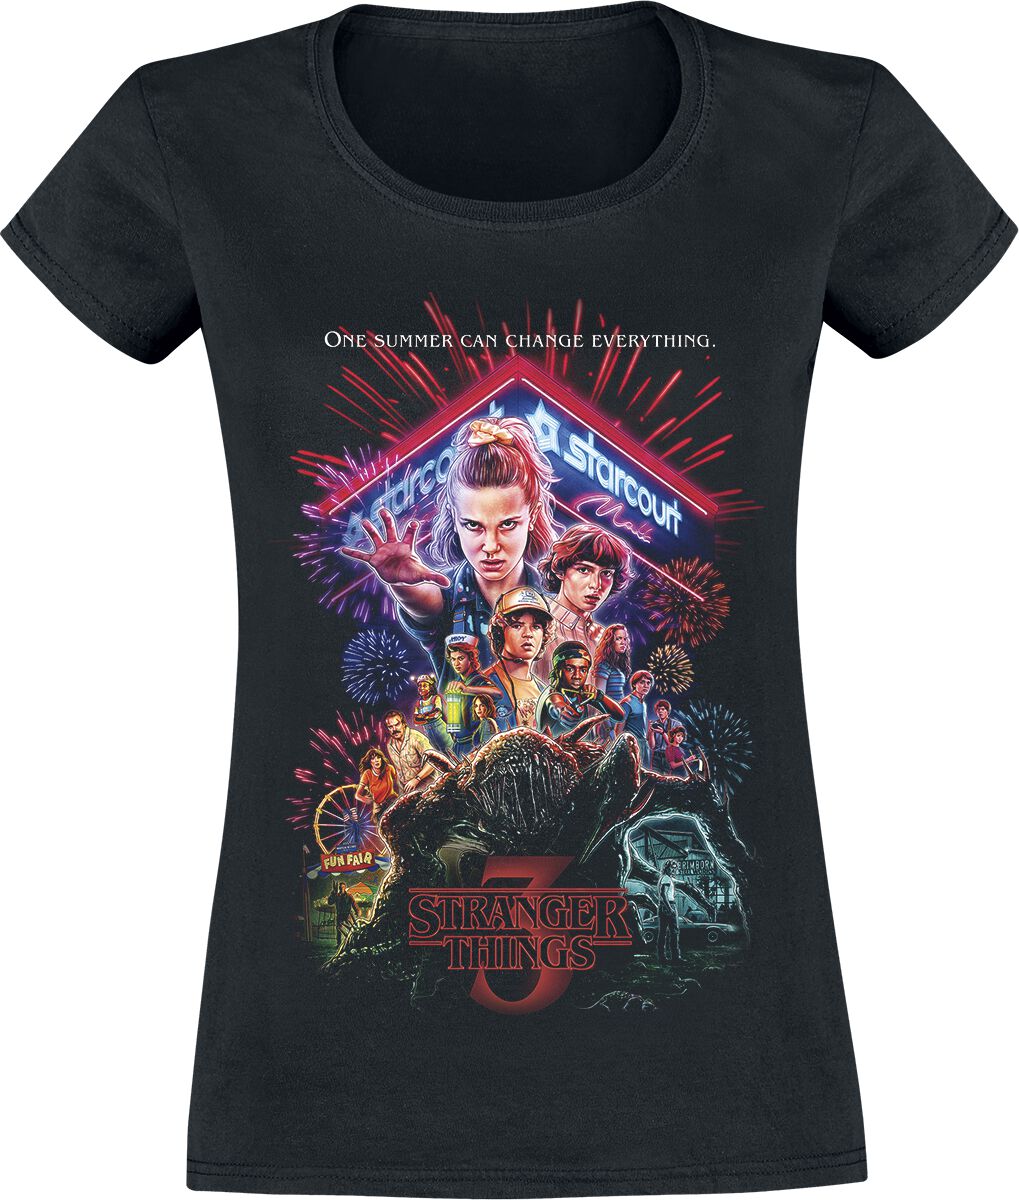 Stranger Things T-Shirt - Staffel 3 Cover - XS bis XXL - für Damen - Größe S - schwarz  - EMP exklusives Merchandise!